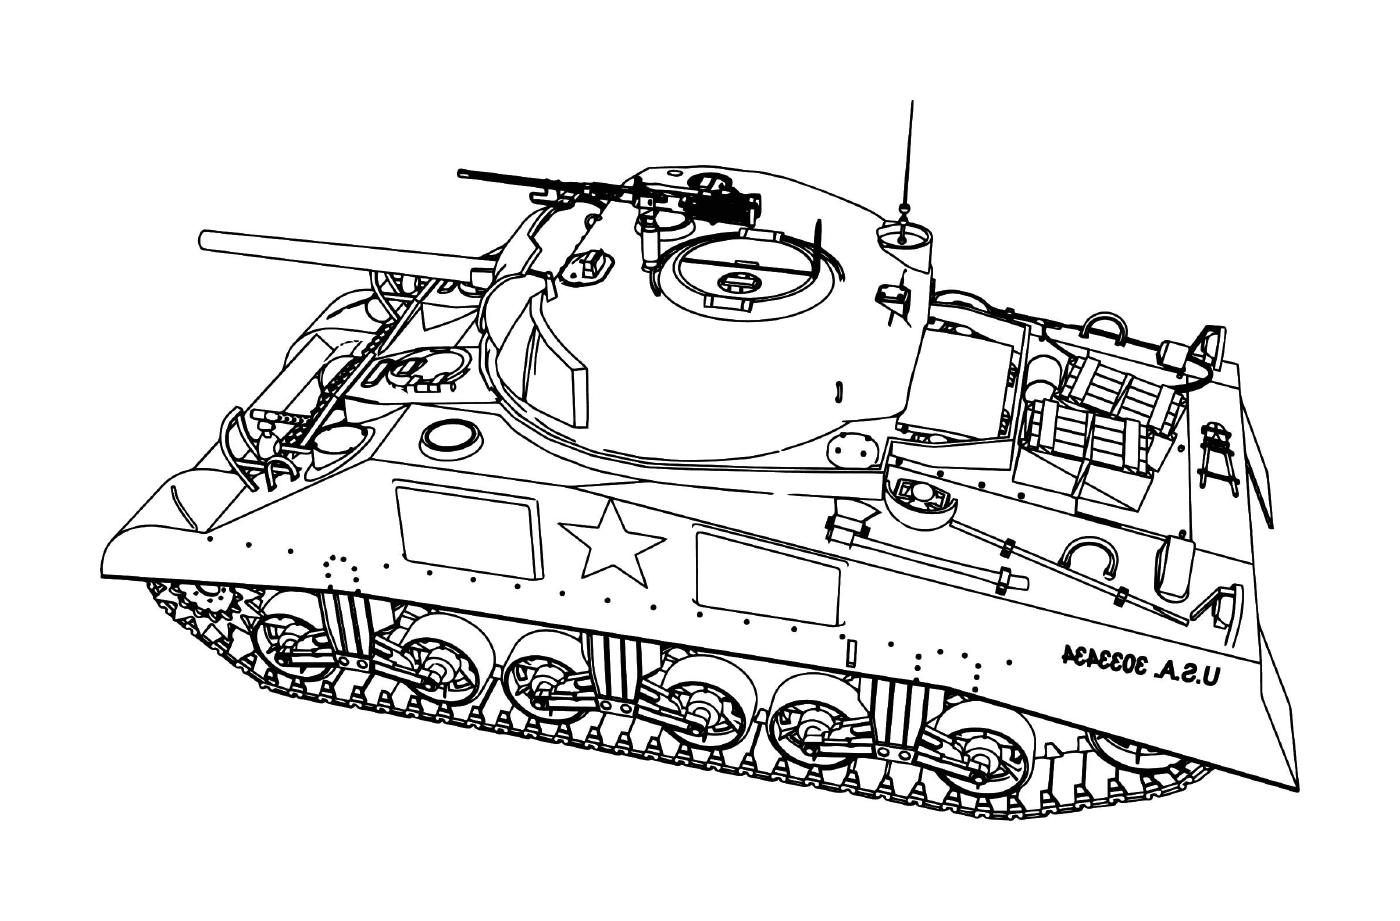  Танк " Чар Дассо ", Американская армия (США): танк со звездой 